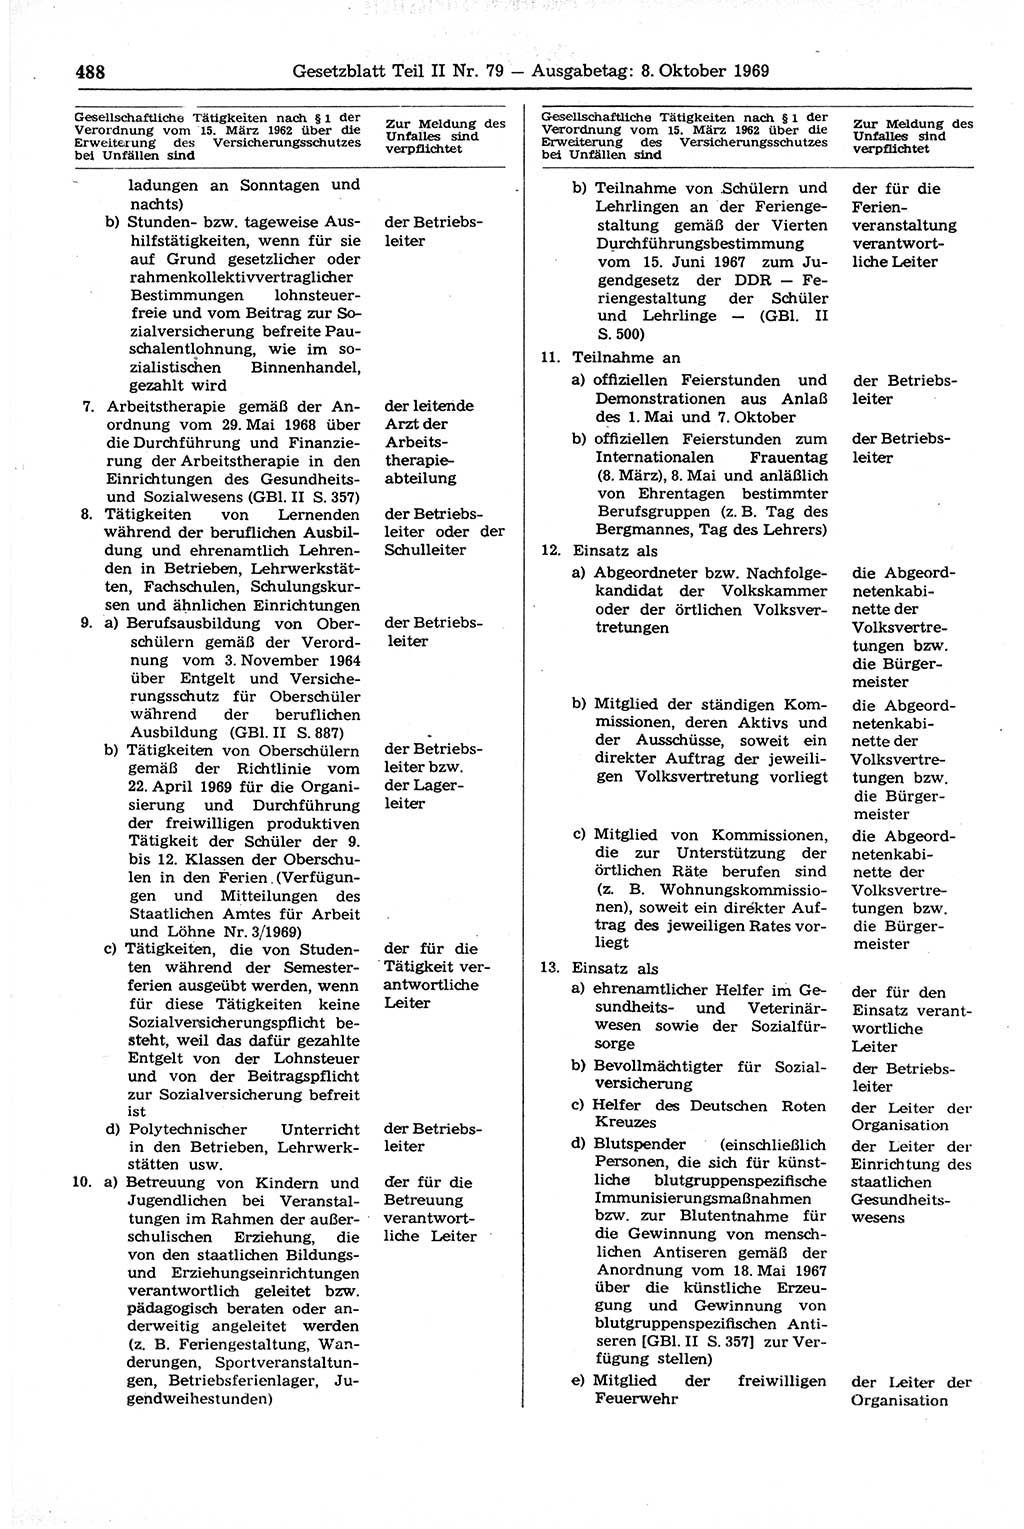 Gesetzblatt (GBl.) der Deutschen Demokratischen Republik (DDR) Teil ⅠⅠ 1969, Seite 488 (GBl. DDR ⅠⅠ 1969, S. 488)